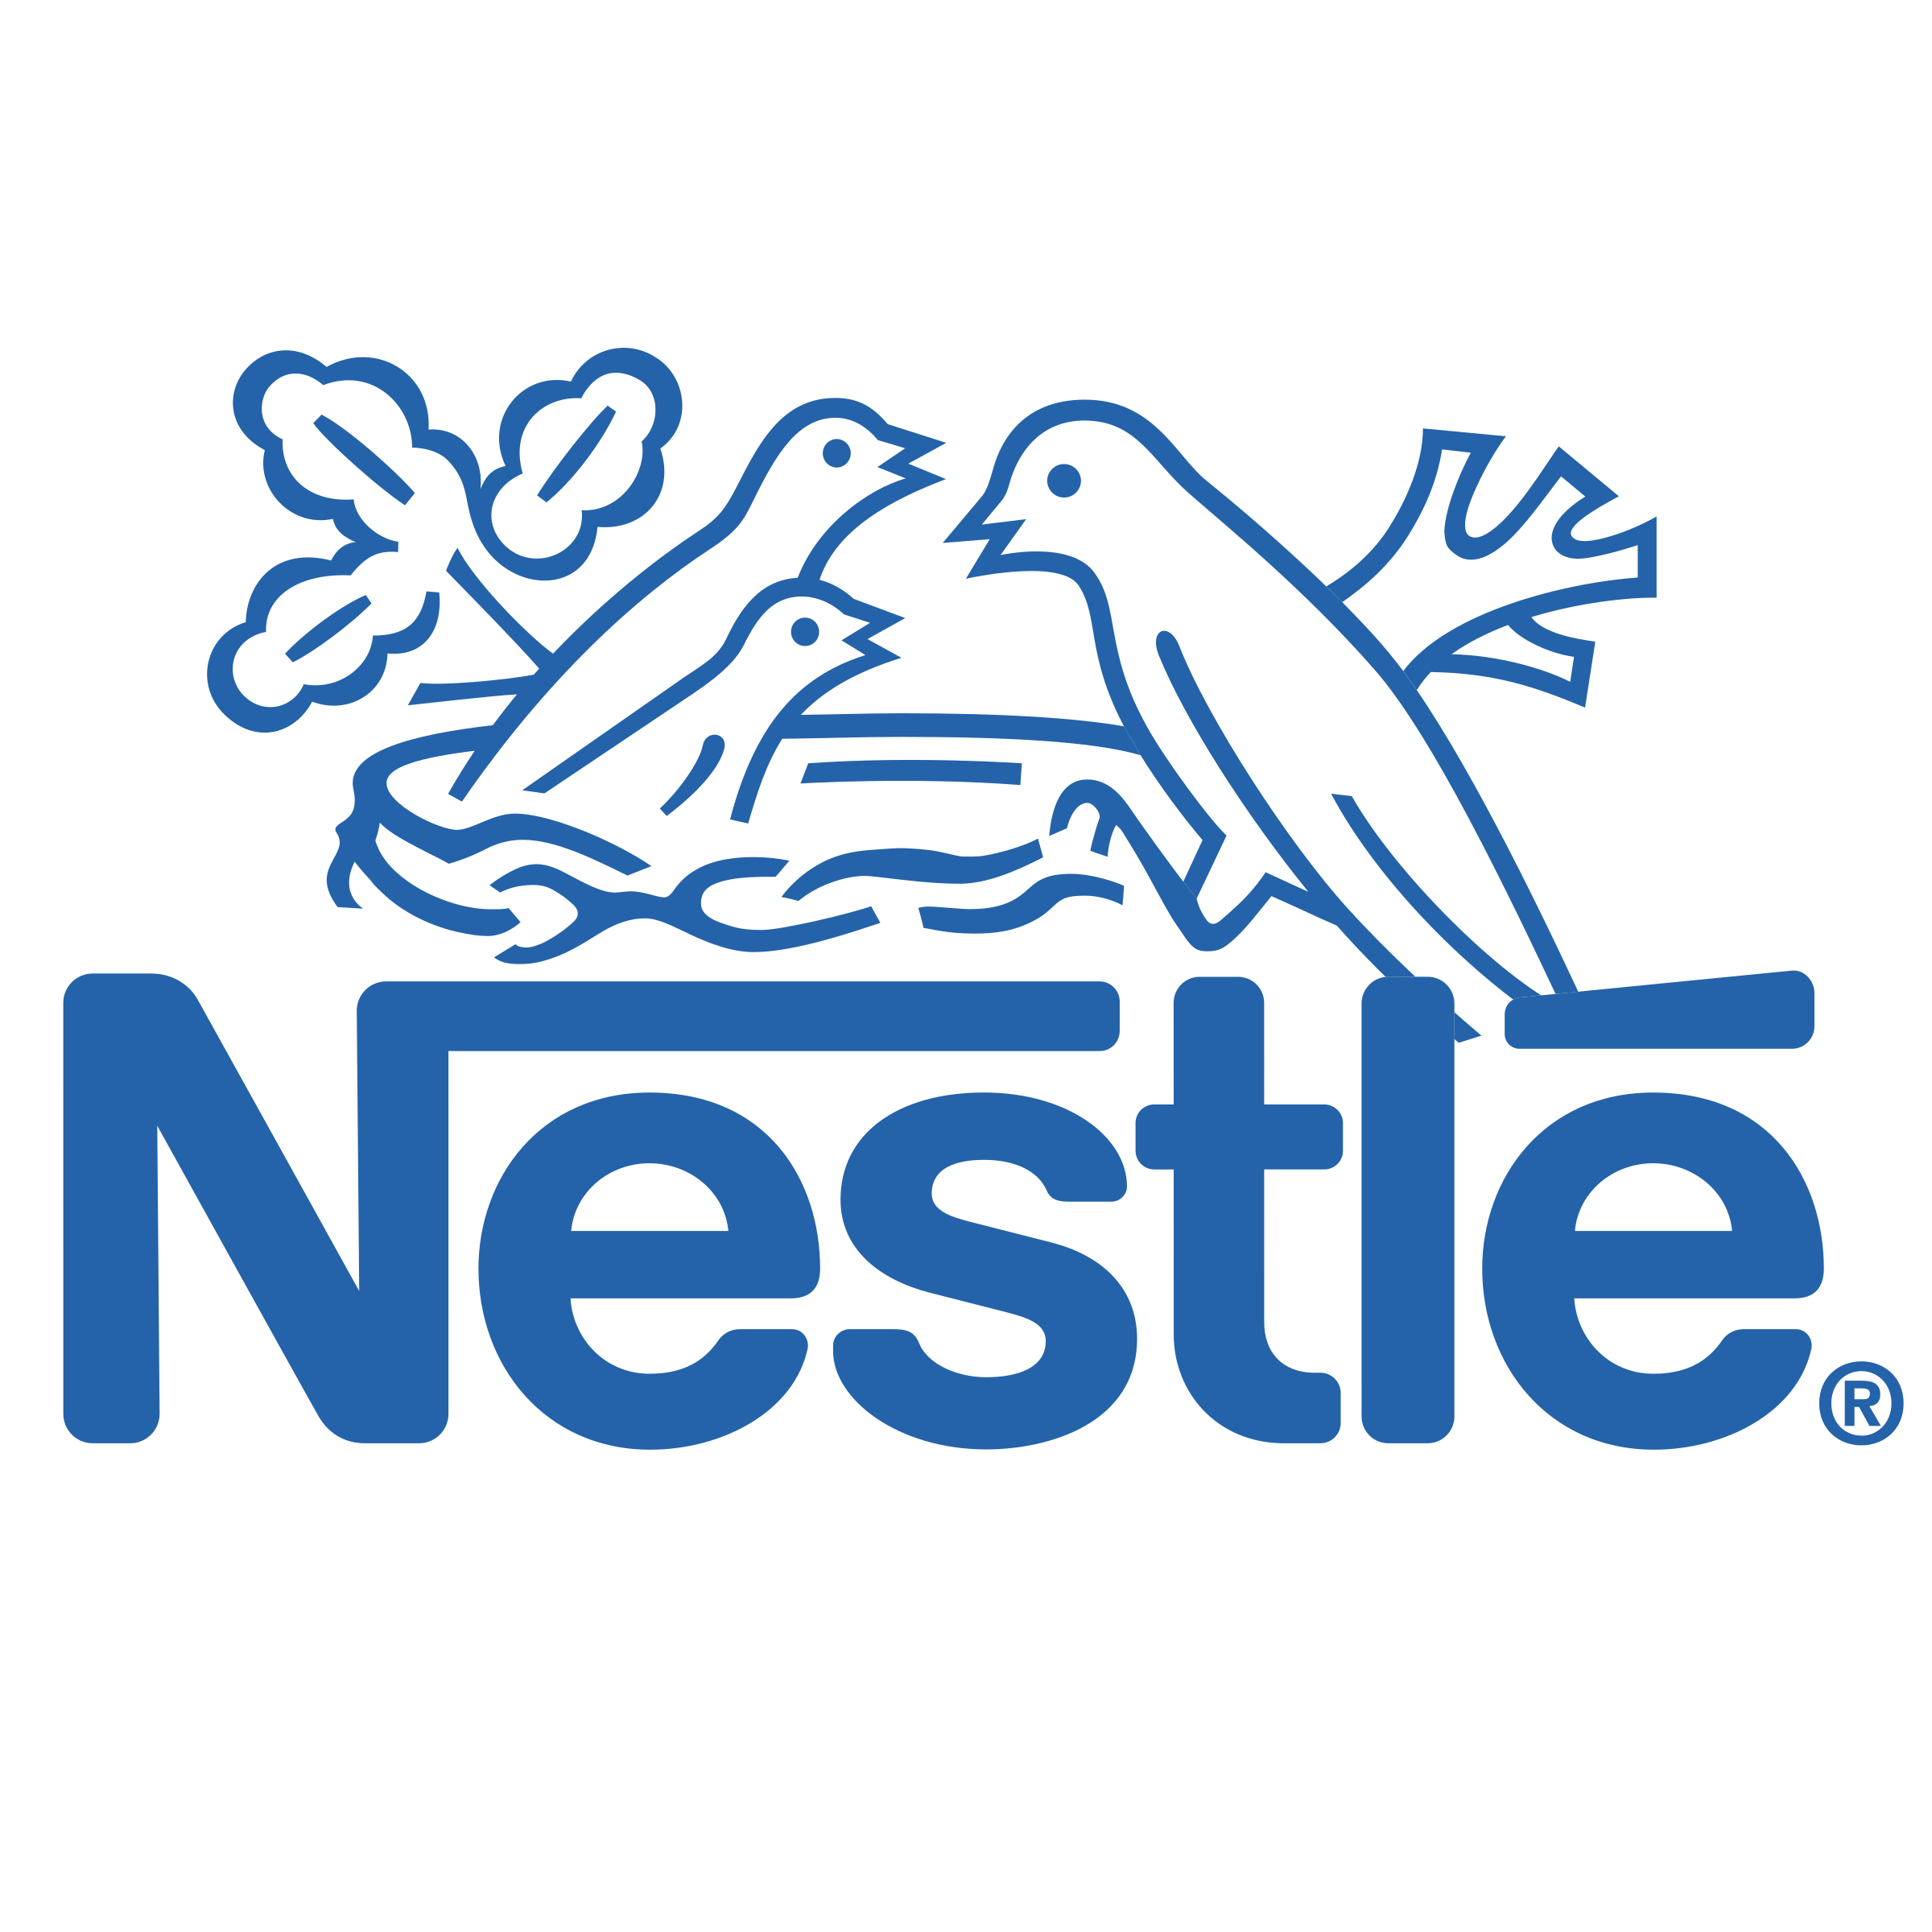 nestle-4-logo-png-transparent.png